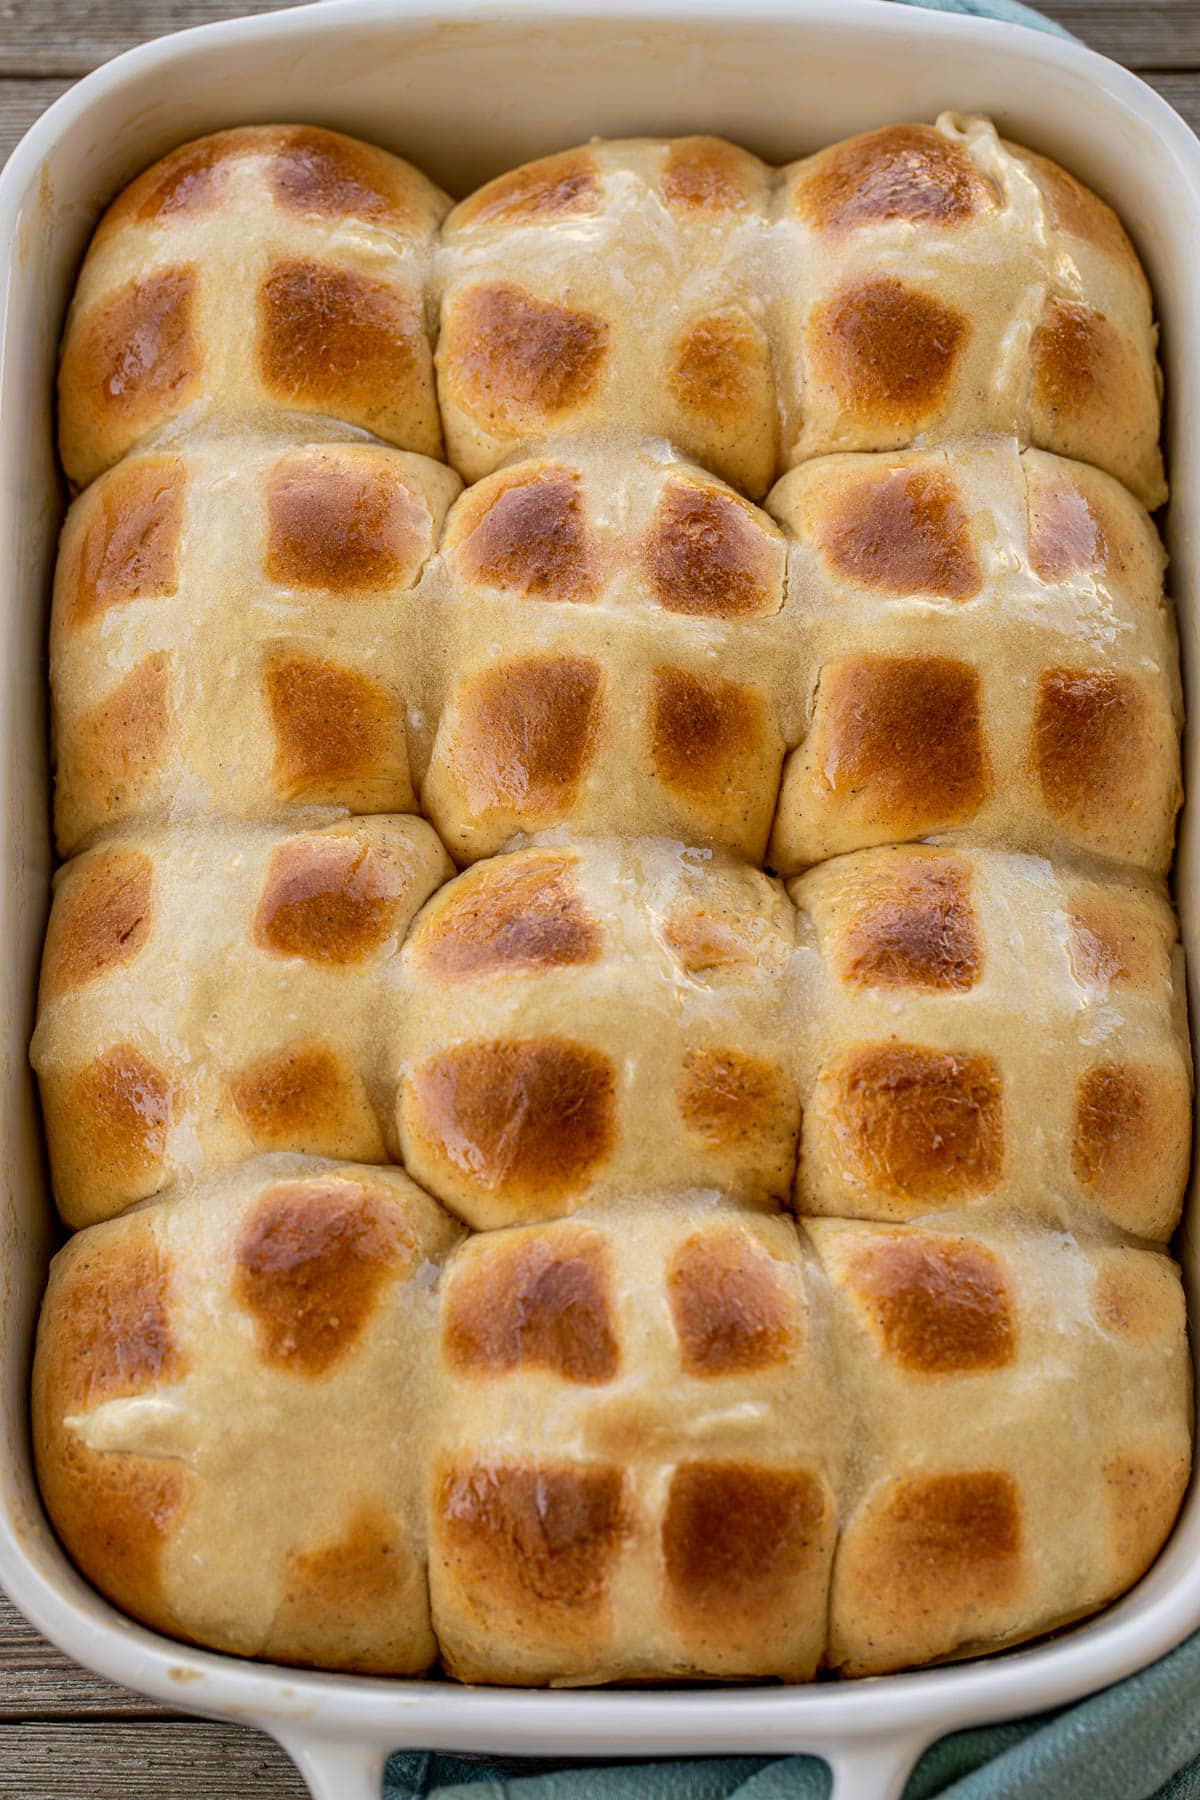 Big pan of Easter hot cross buns